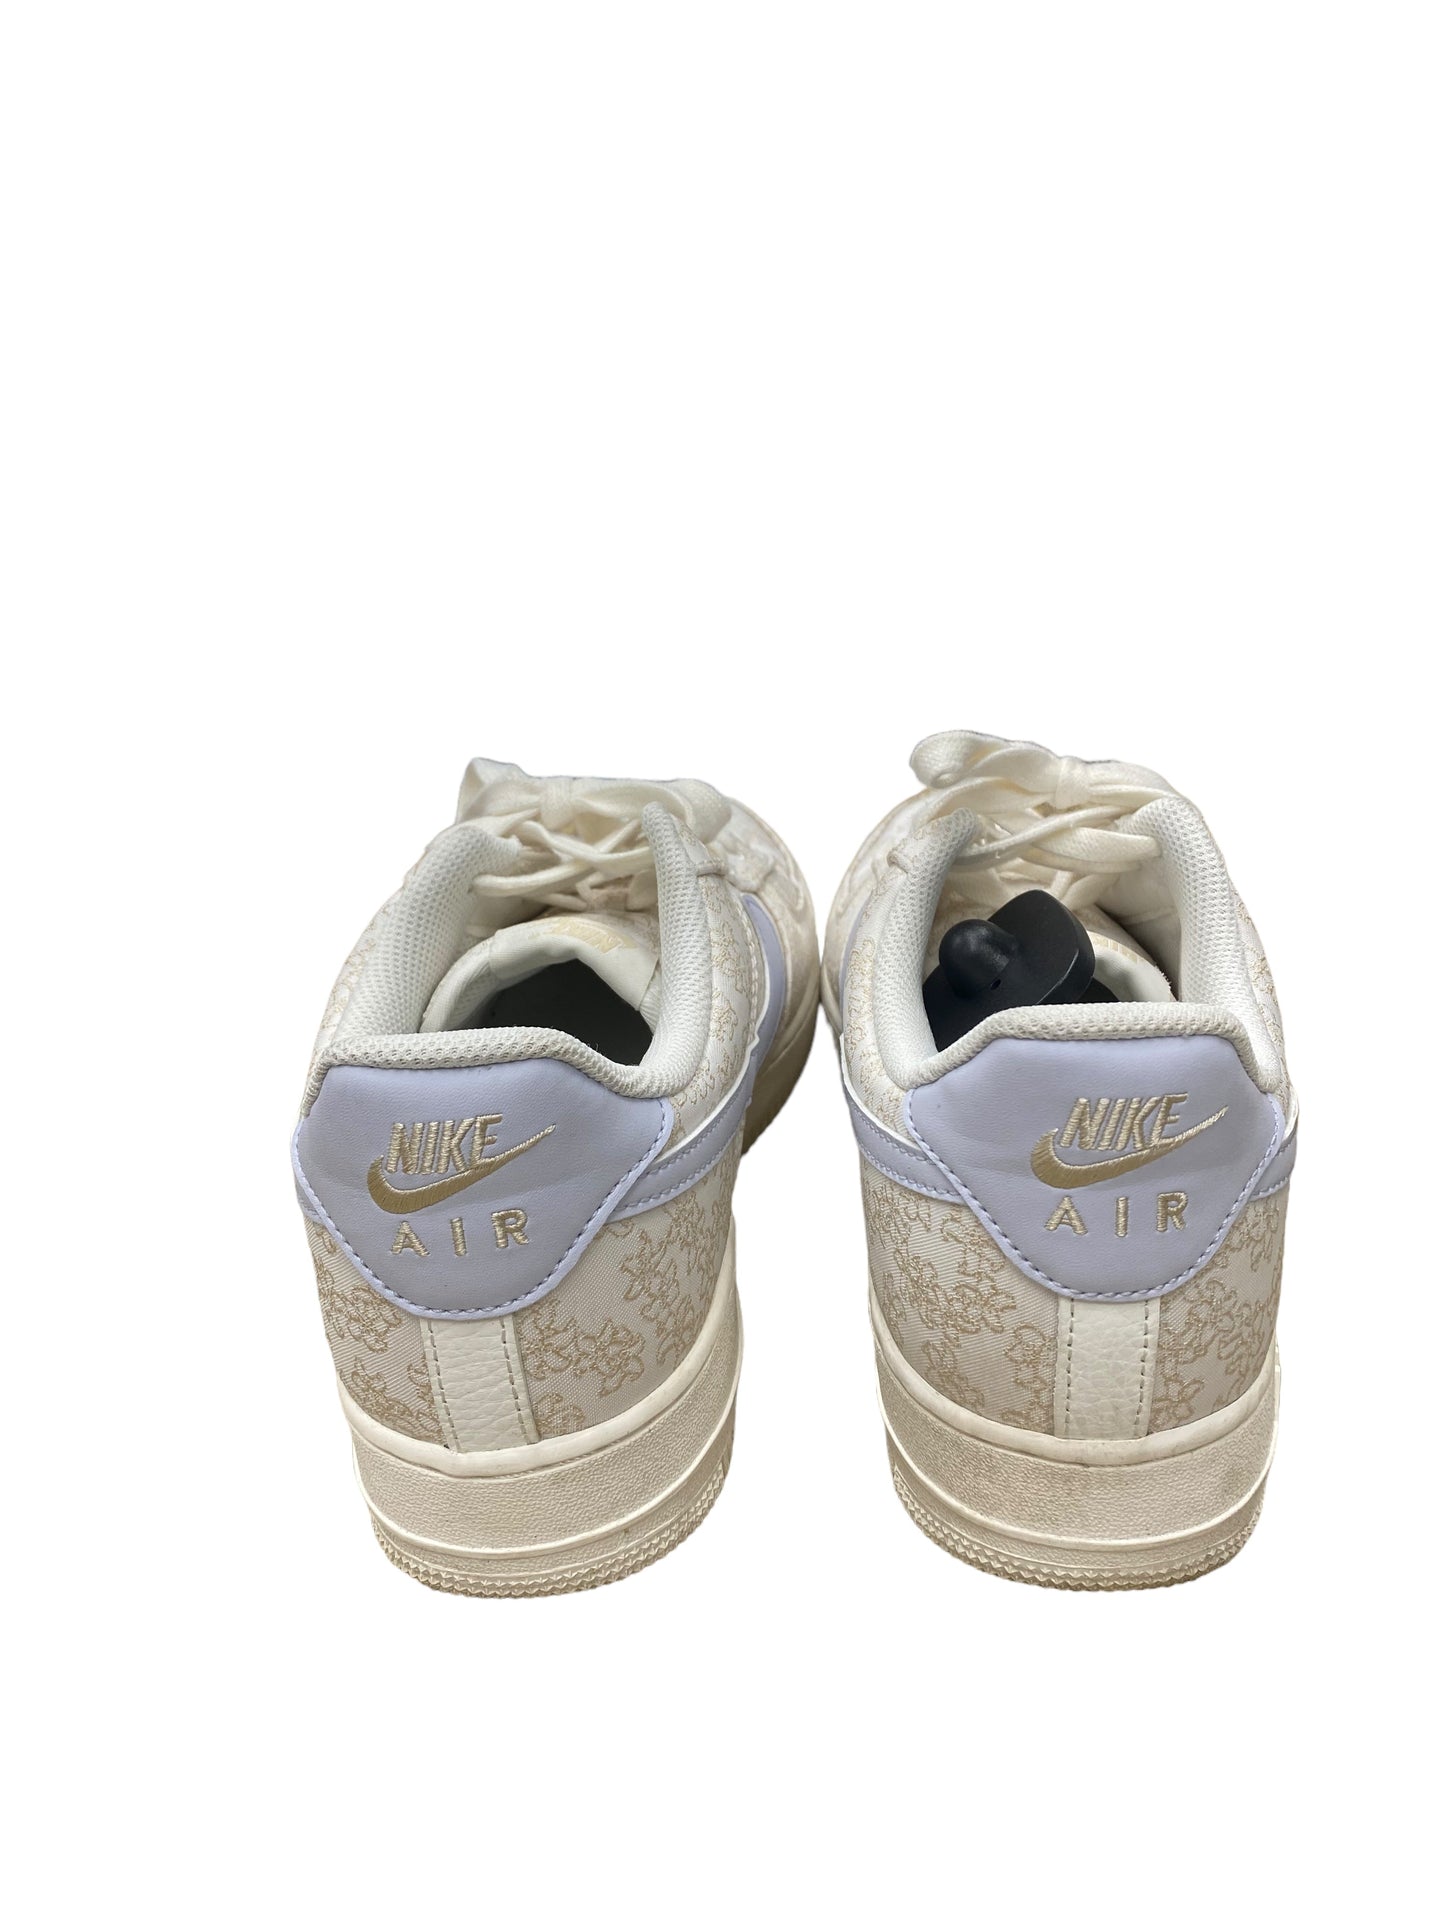 Blue & White Shoes Athletic Nike, Size 11